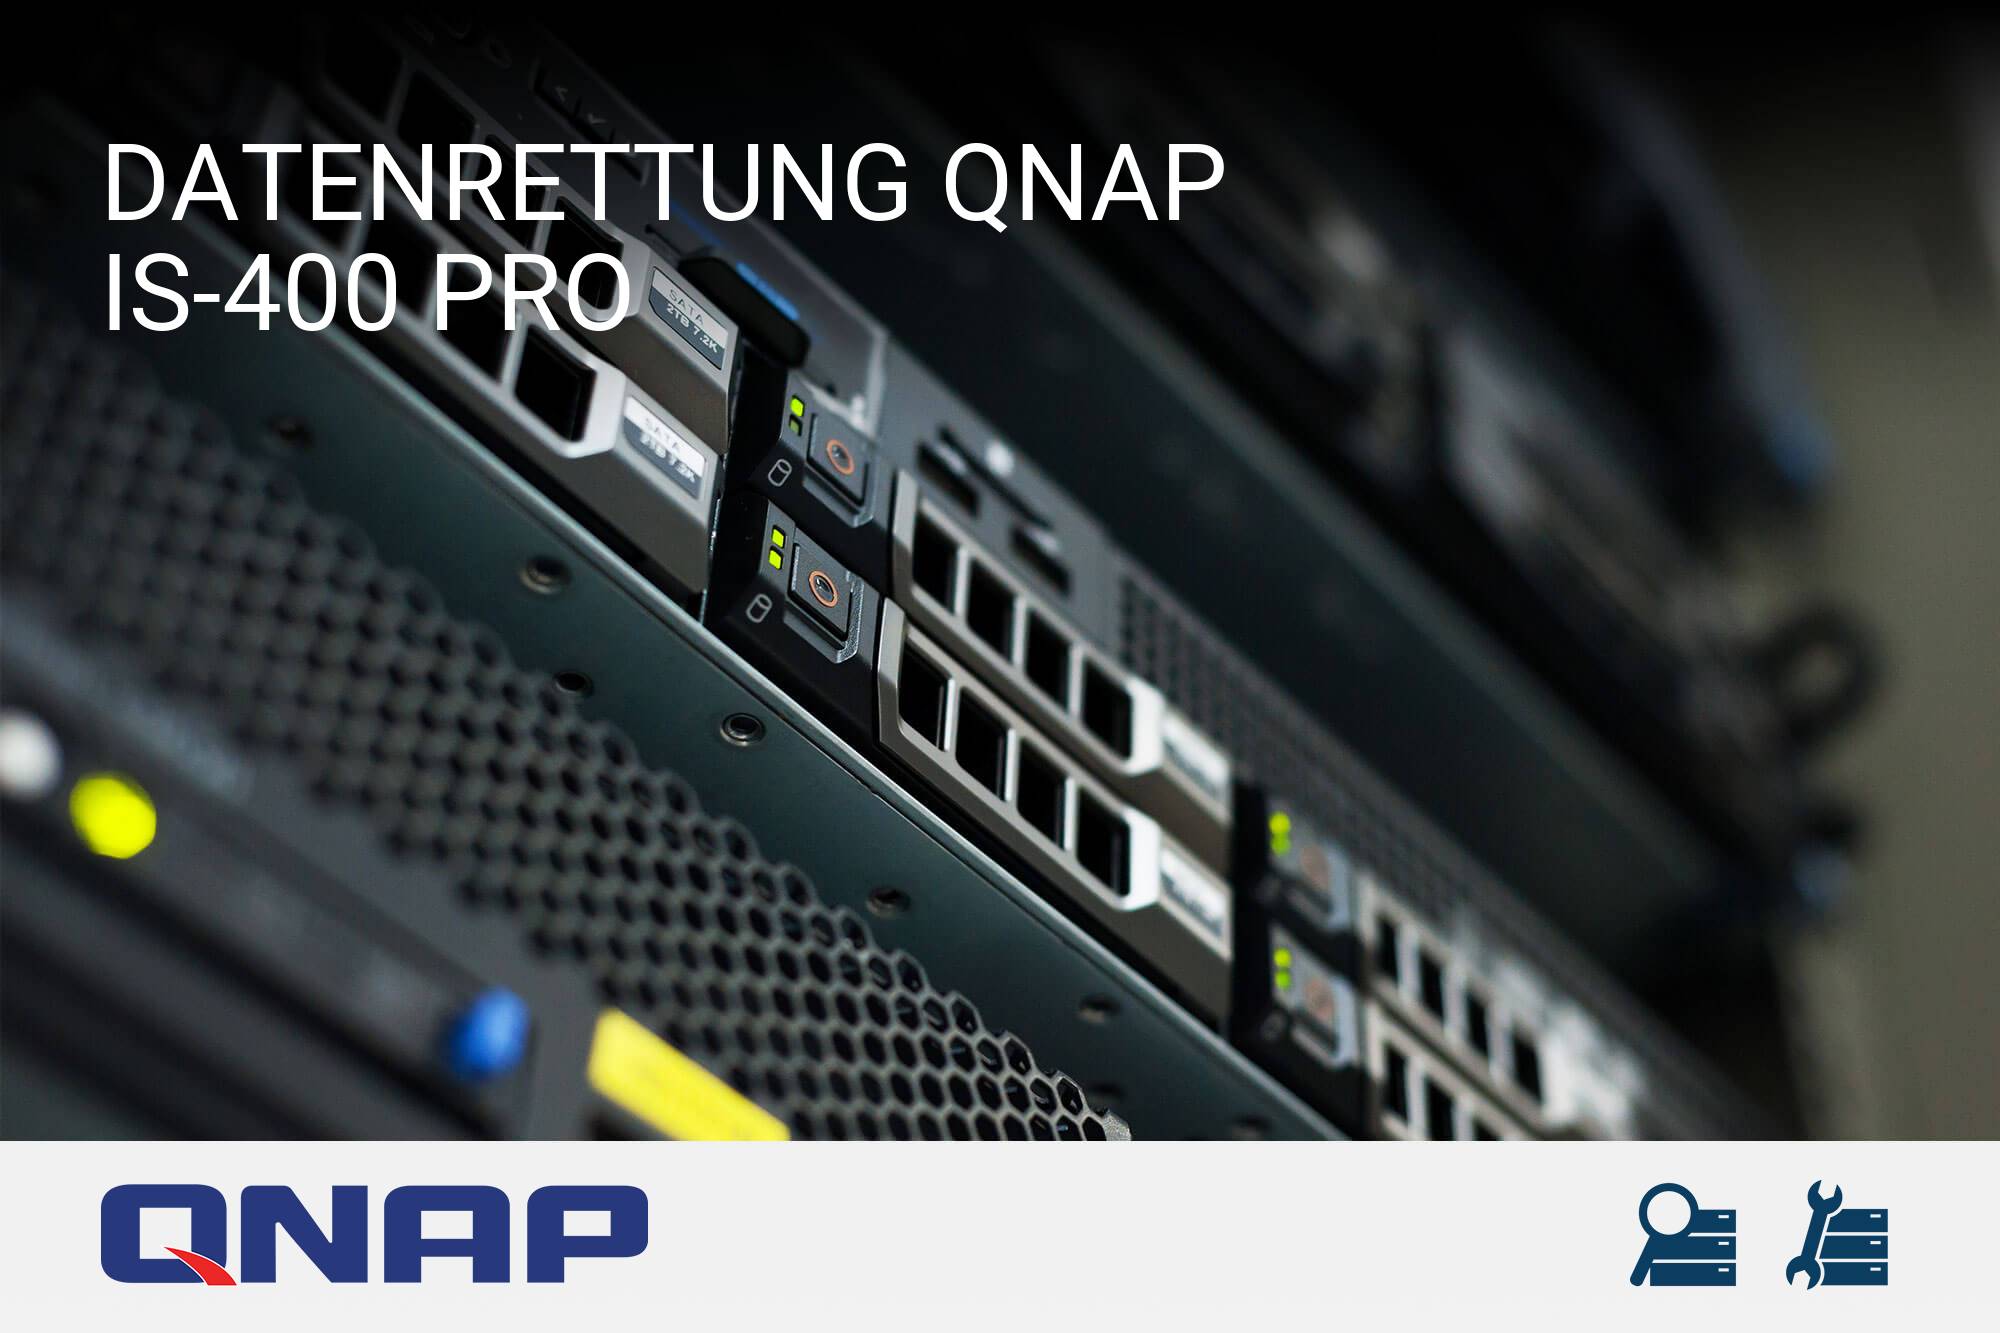 QNAP IS-400 Pro